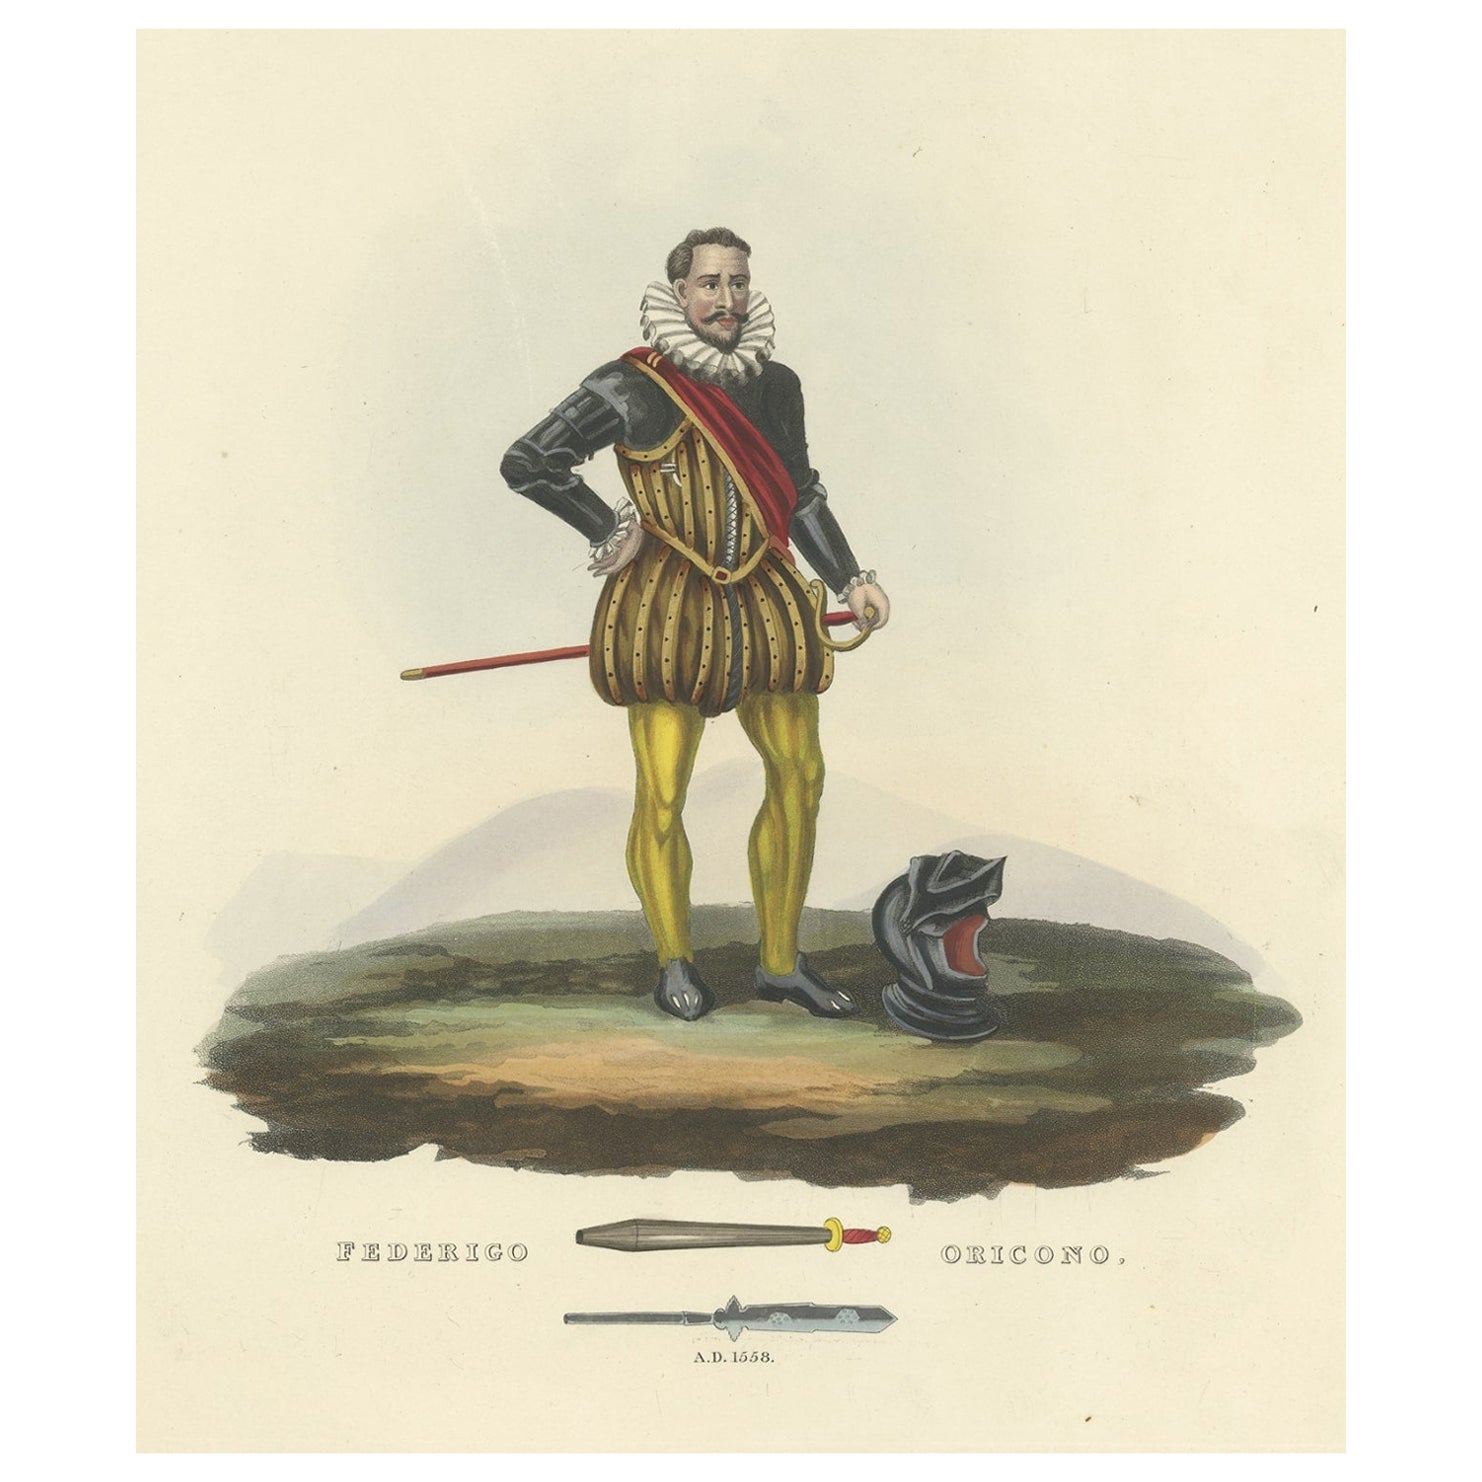 Impression ancienne de Federigo Oricono, Tournament Baton et Voulge-Blade, 1842